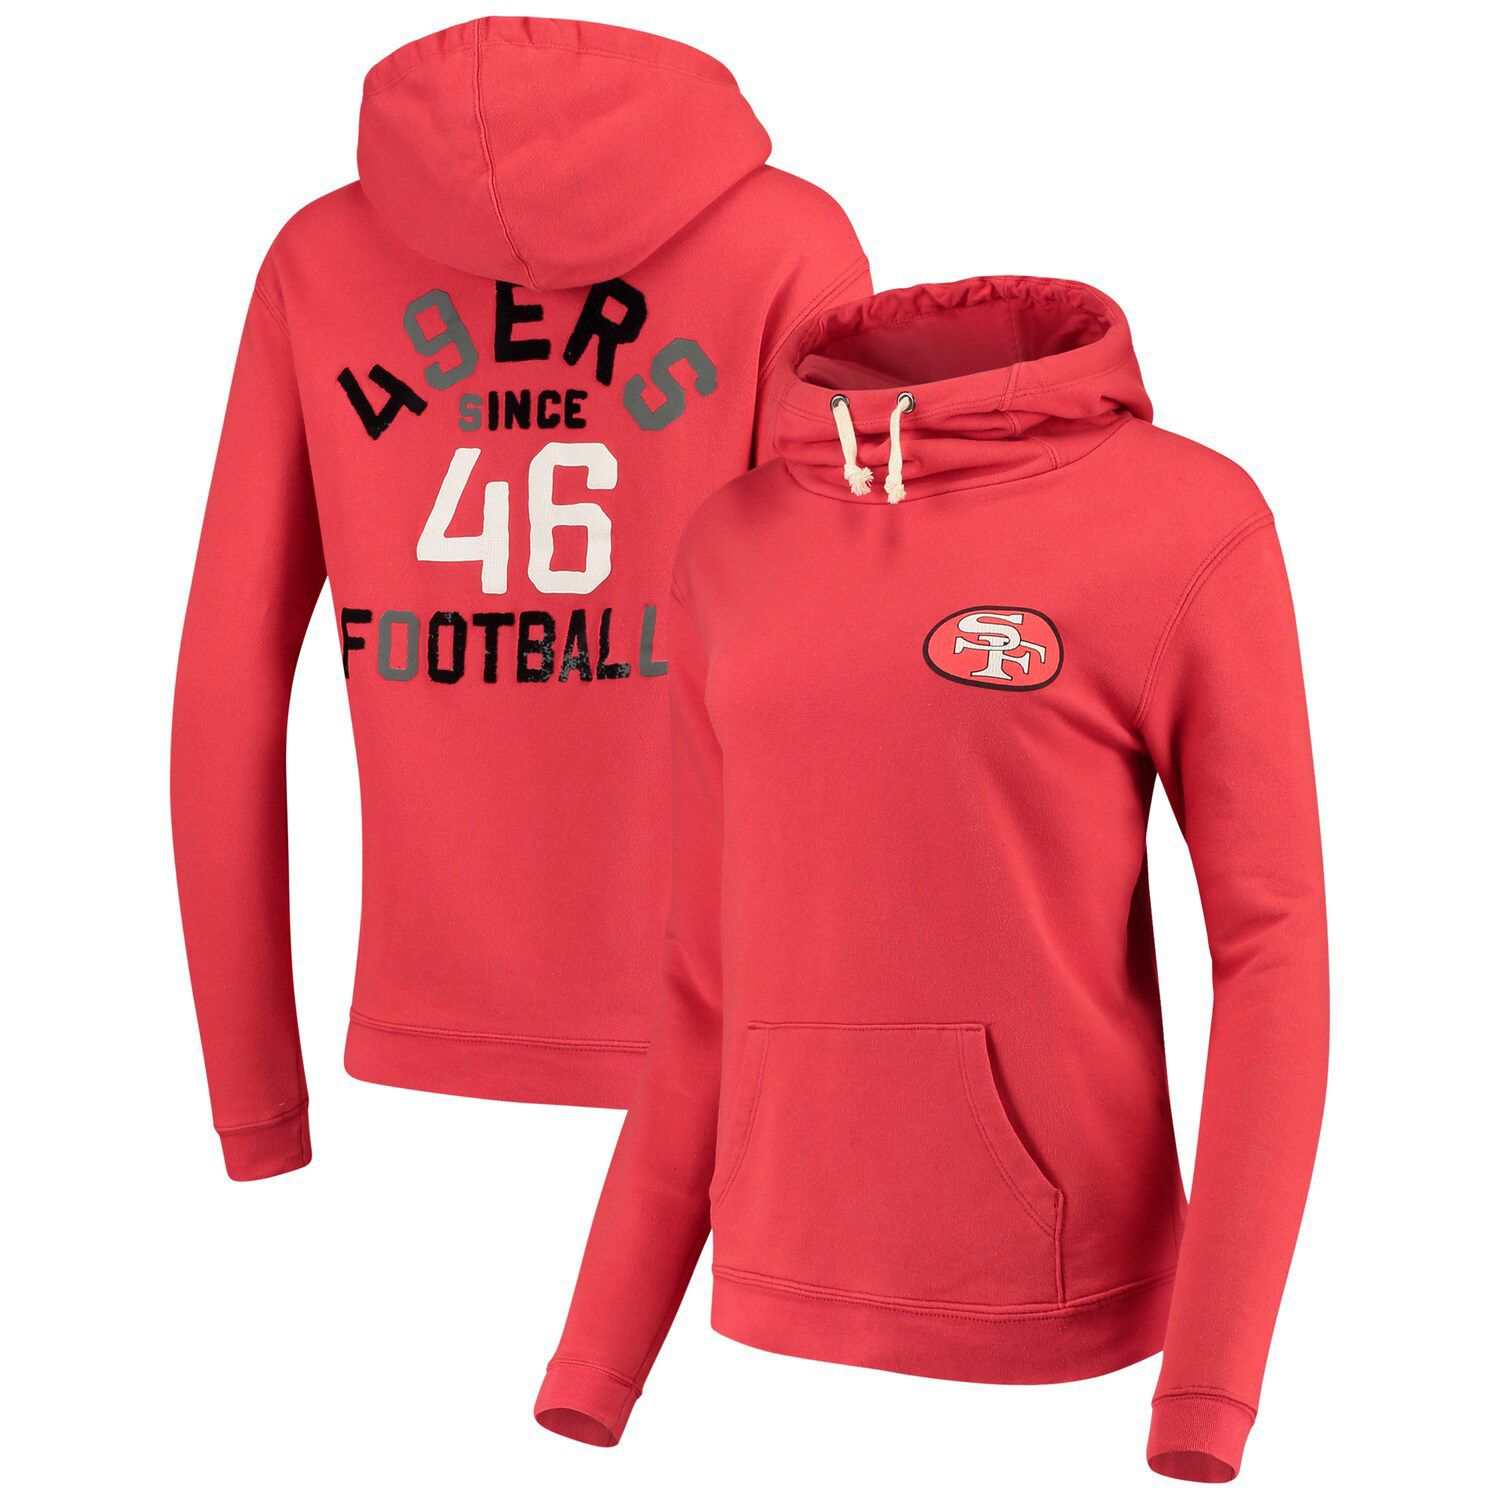 junk food 49ers hoodie